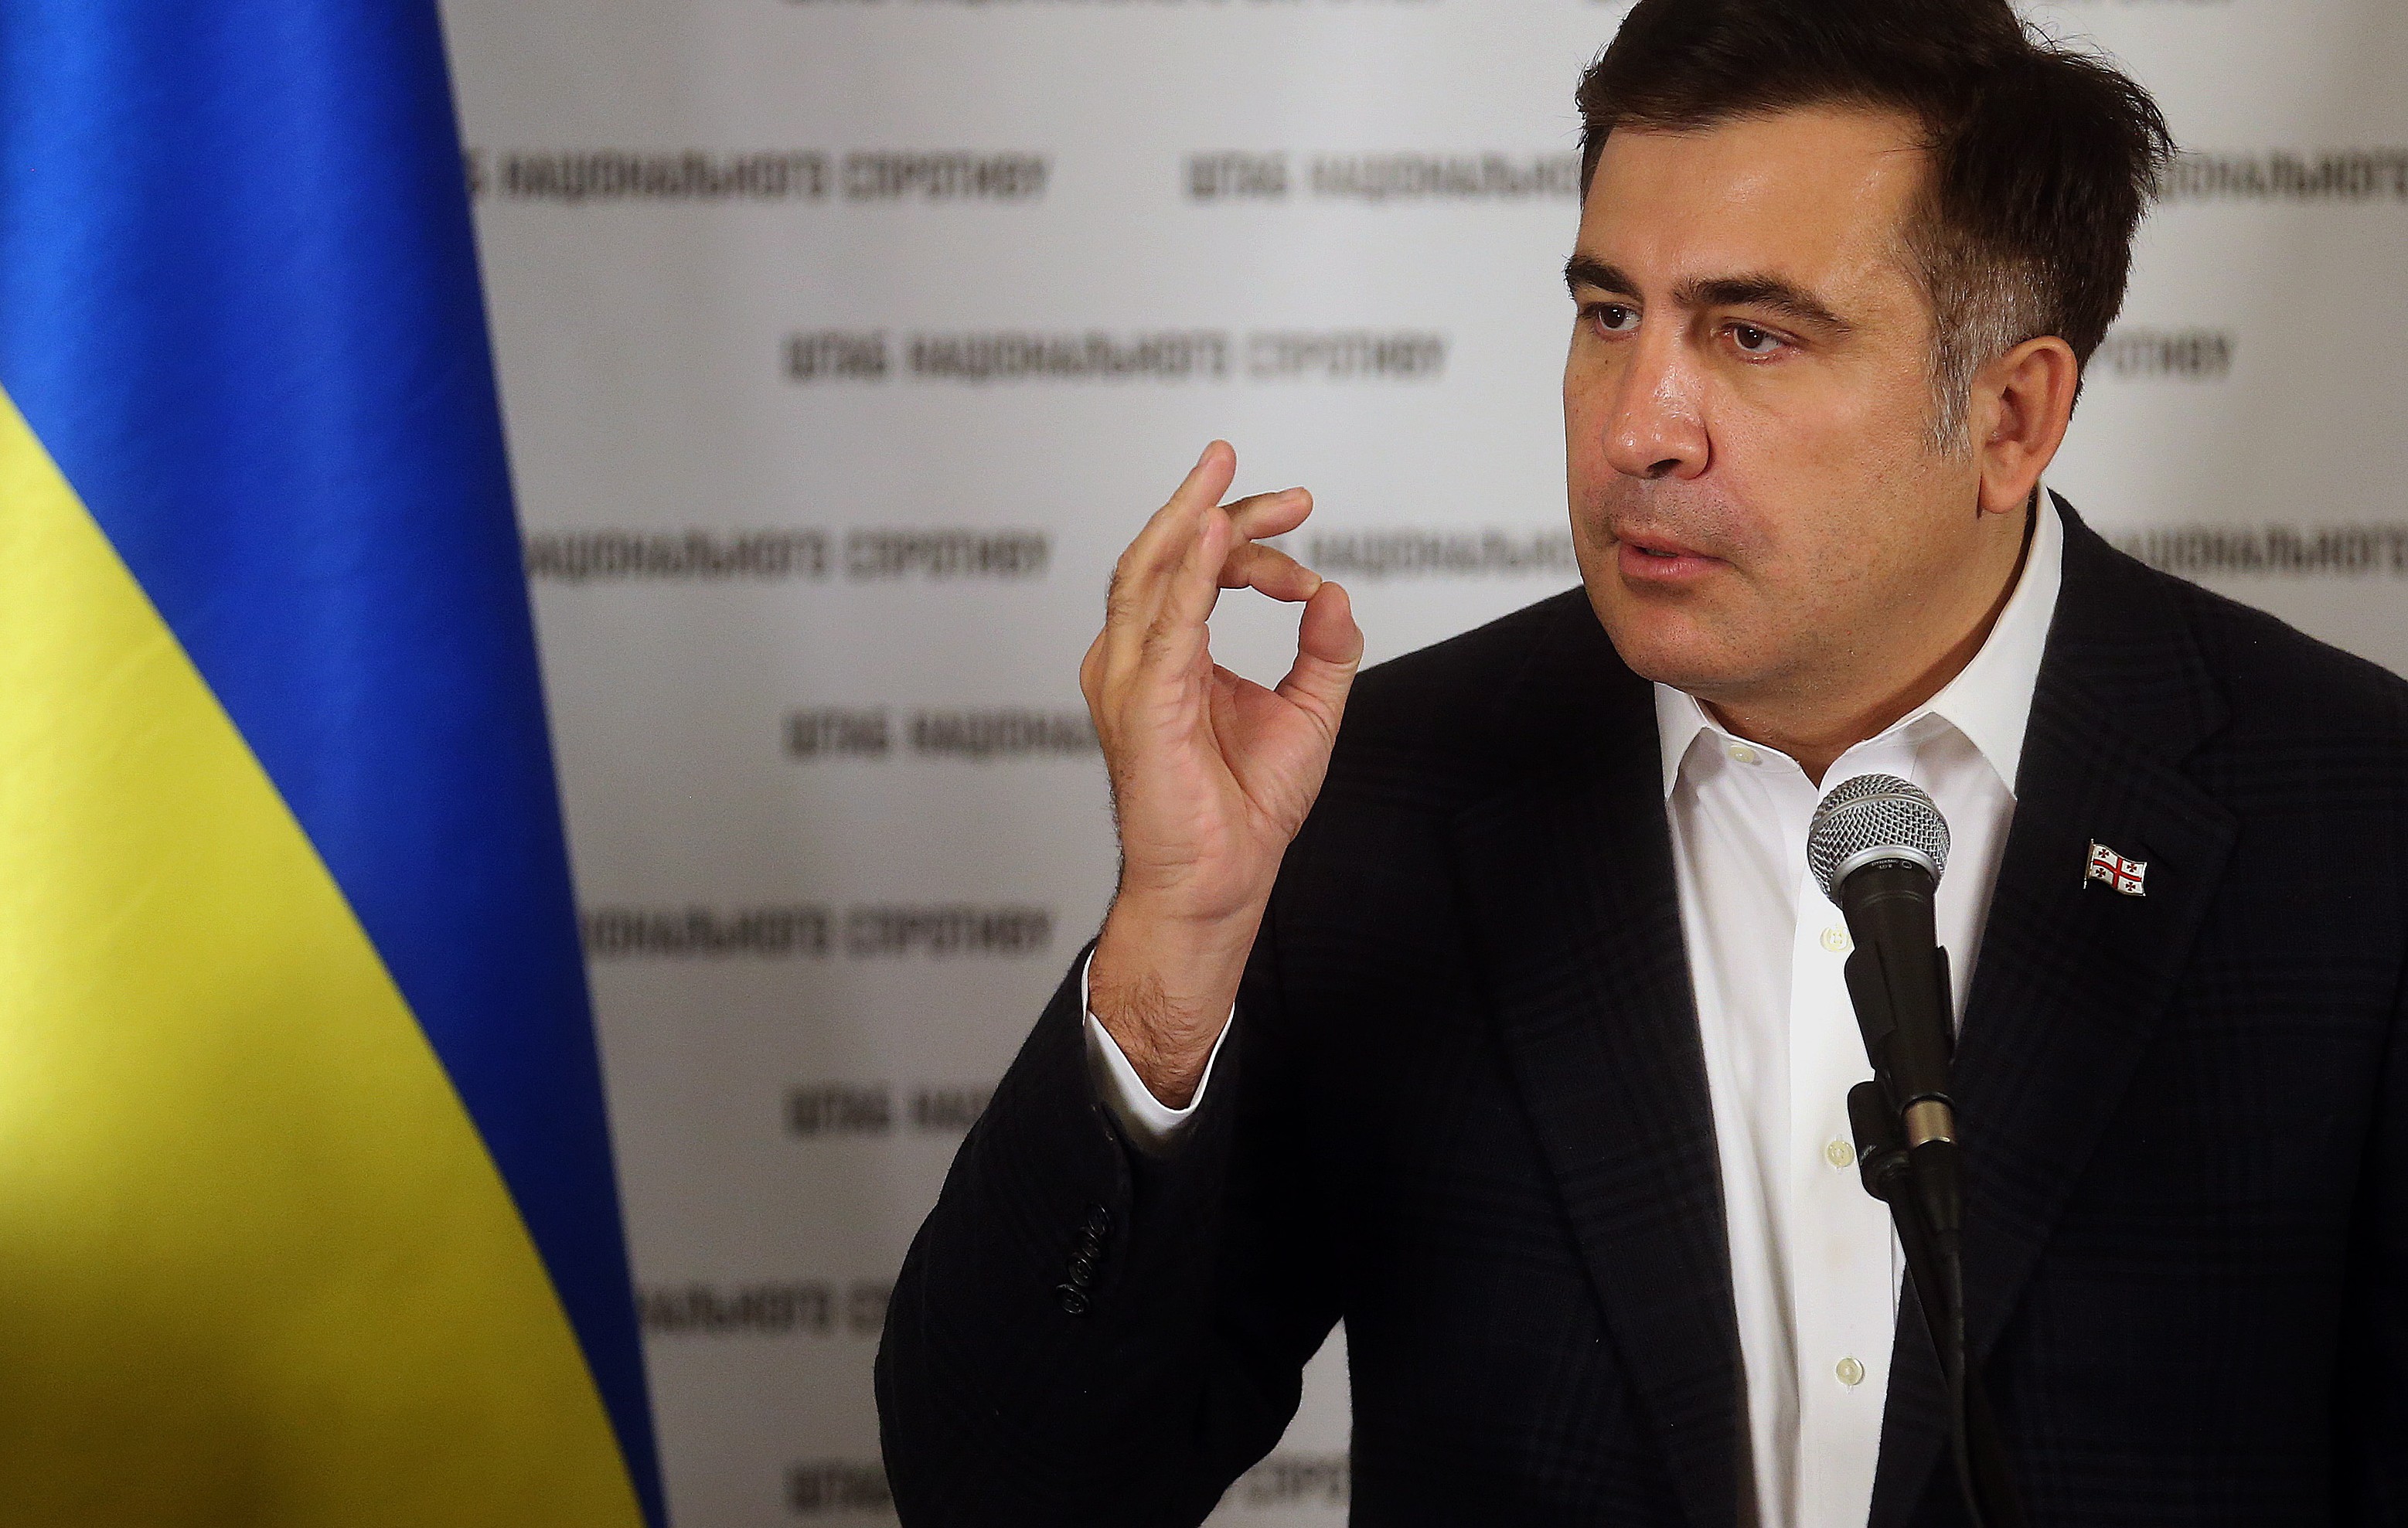 Саакашвили опубликовал обращение к генпрокурору: "Надеюсь, следствие не будет прятать голову в песок" 